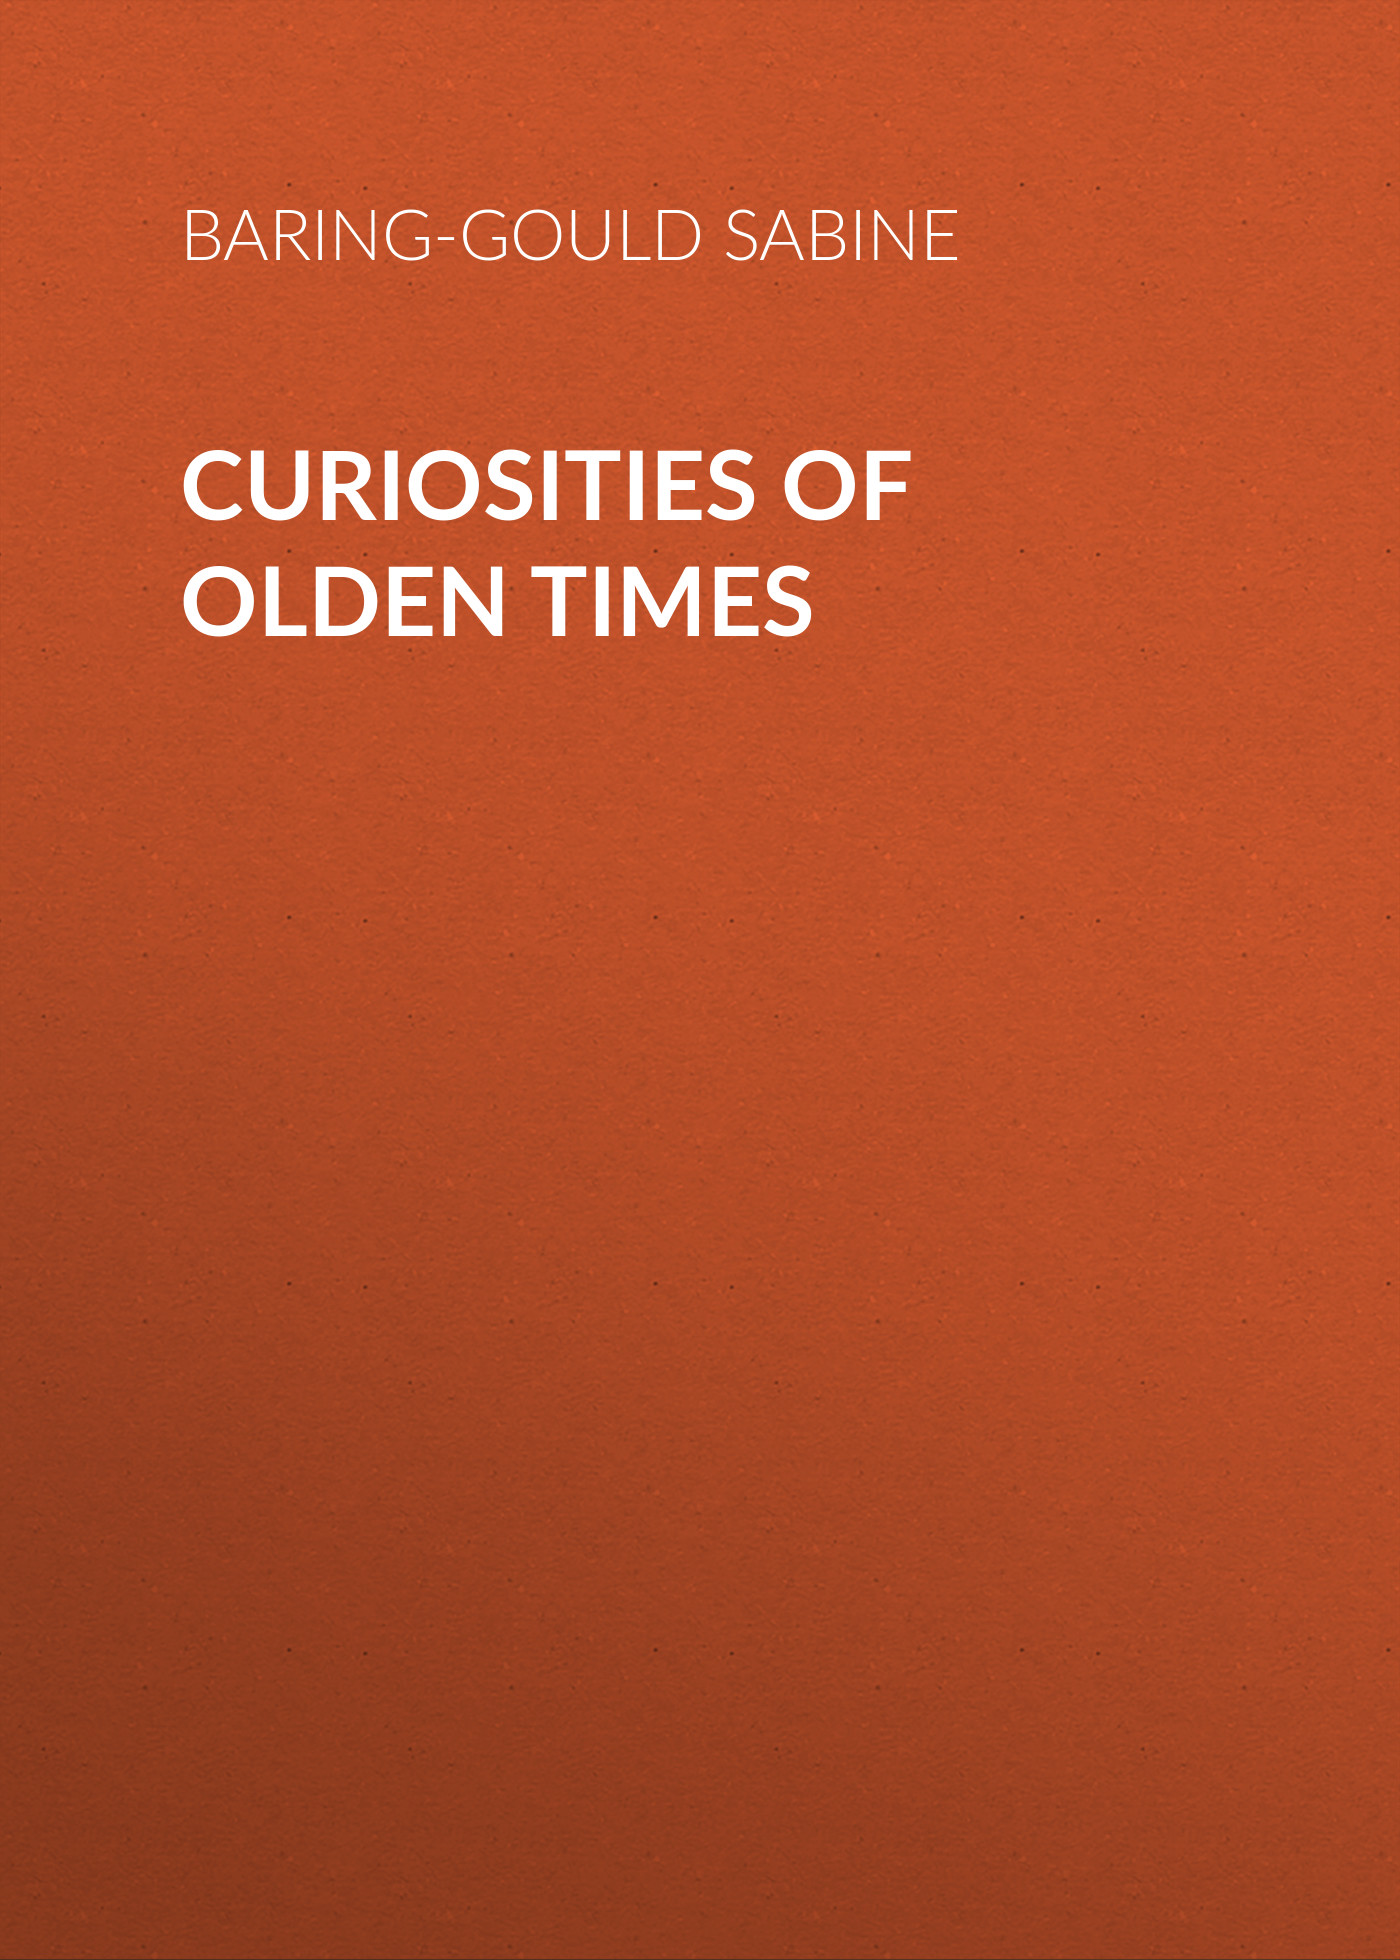 Книга Curiosities of Olden Times из серии , созданная Sabine Baring-Gould, может относится к жанру Зарубежная старинная литература, Зарубежная классика. Стоимость электронной книги Curiosities of Olden Times с идентификатором 24171292 составляет 0.90 руб.